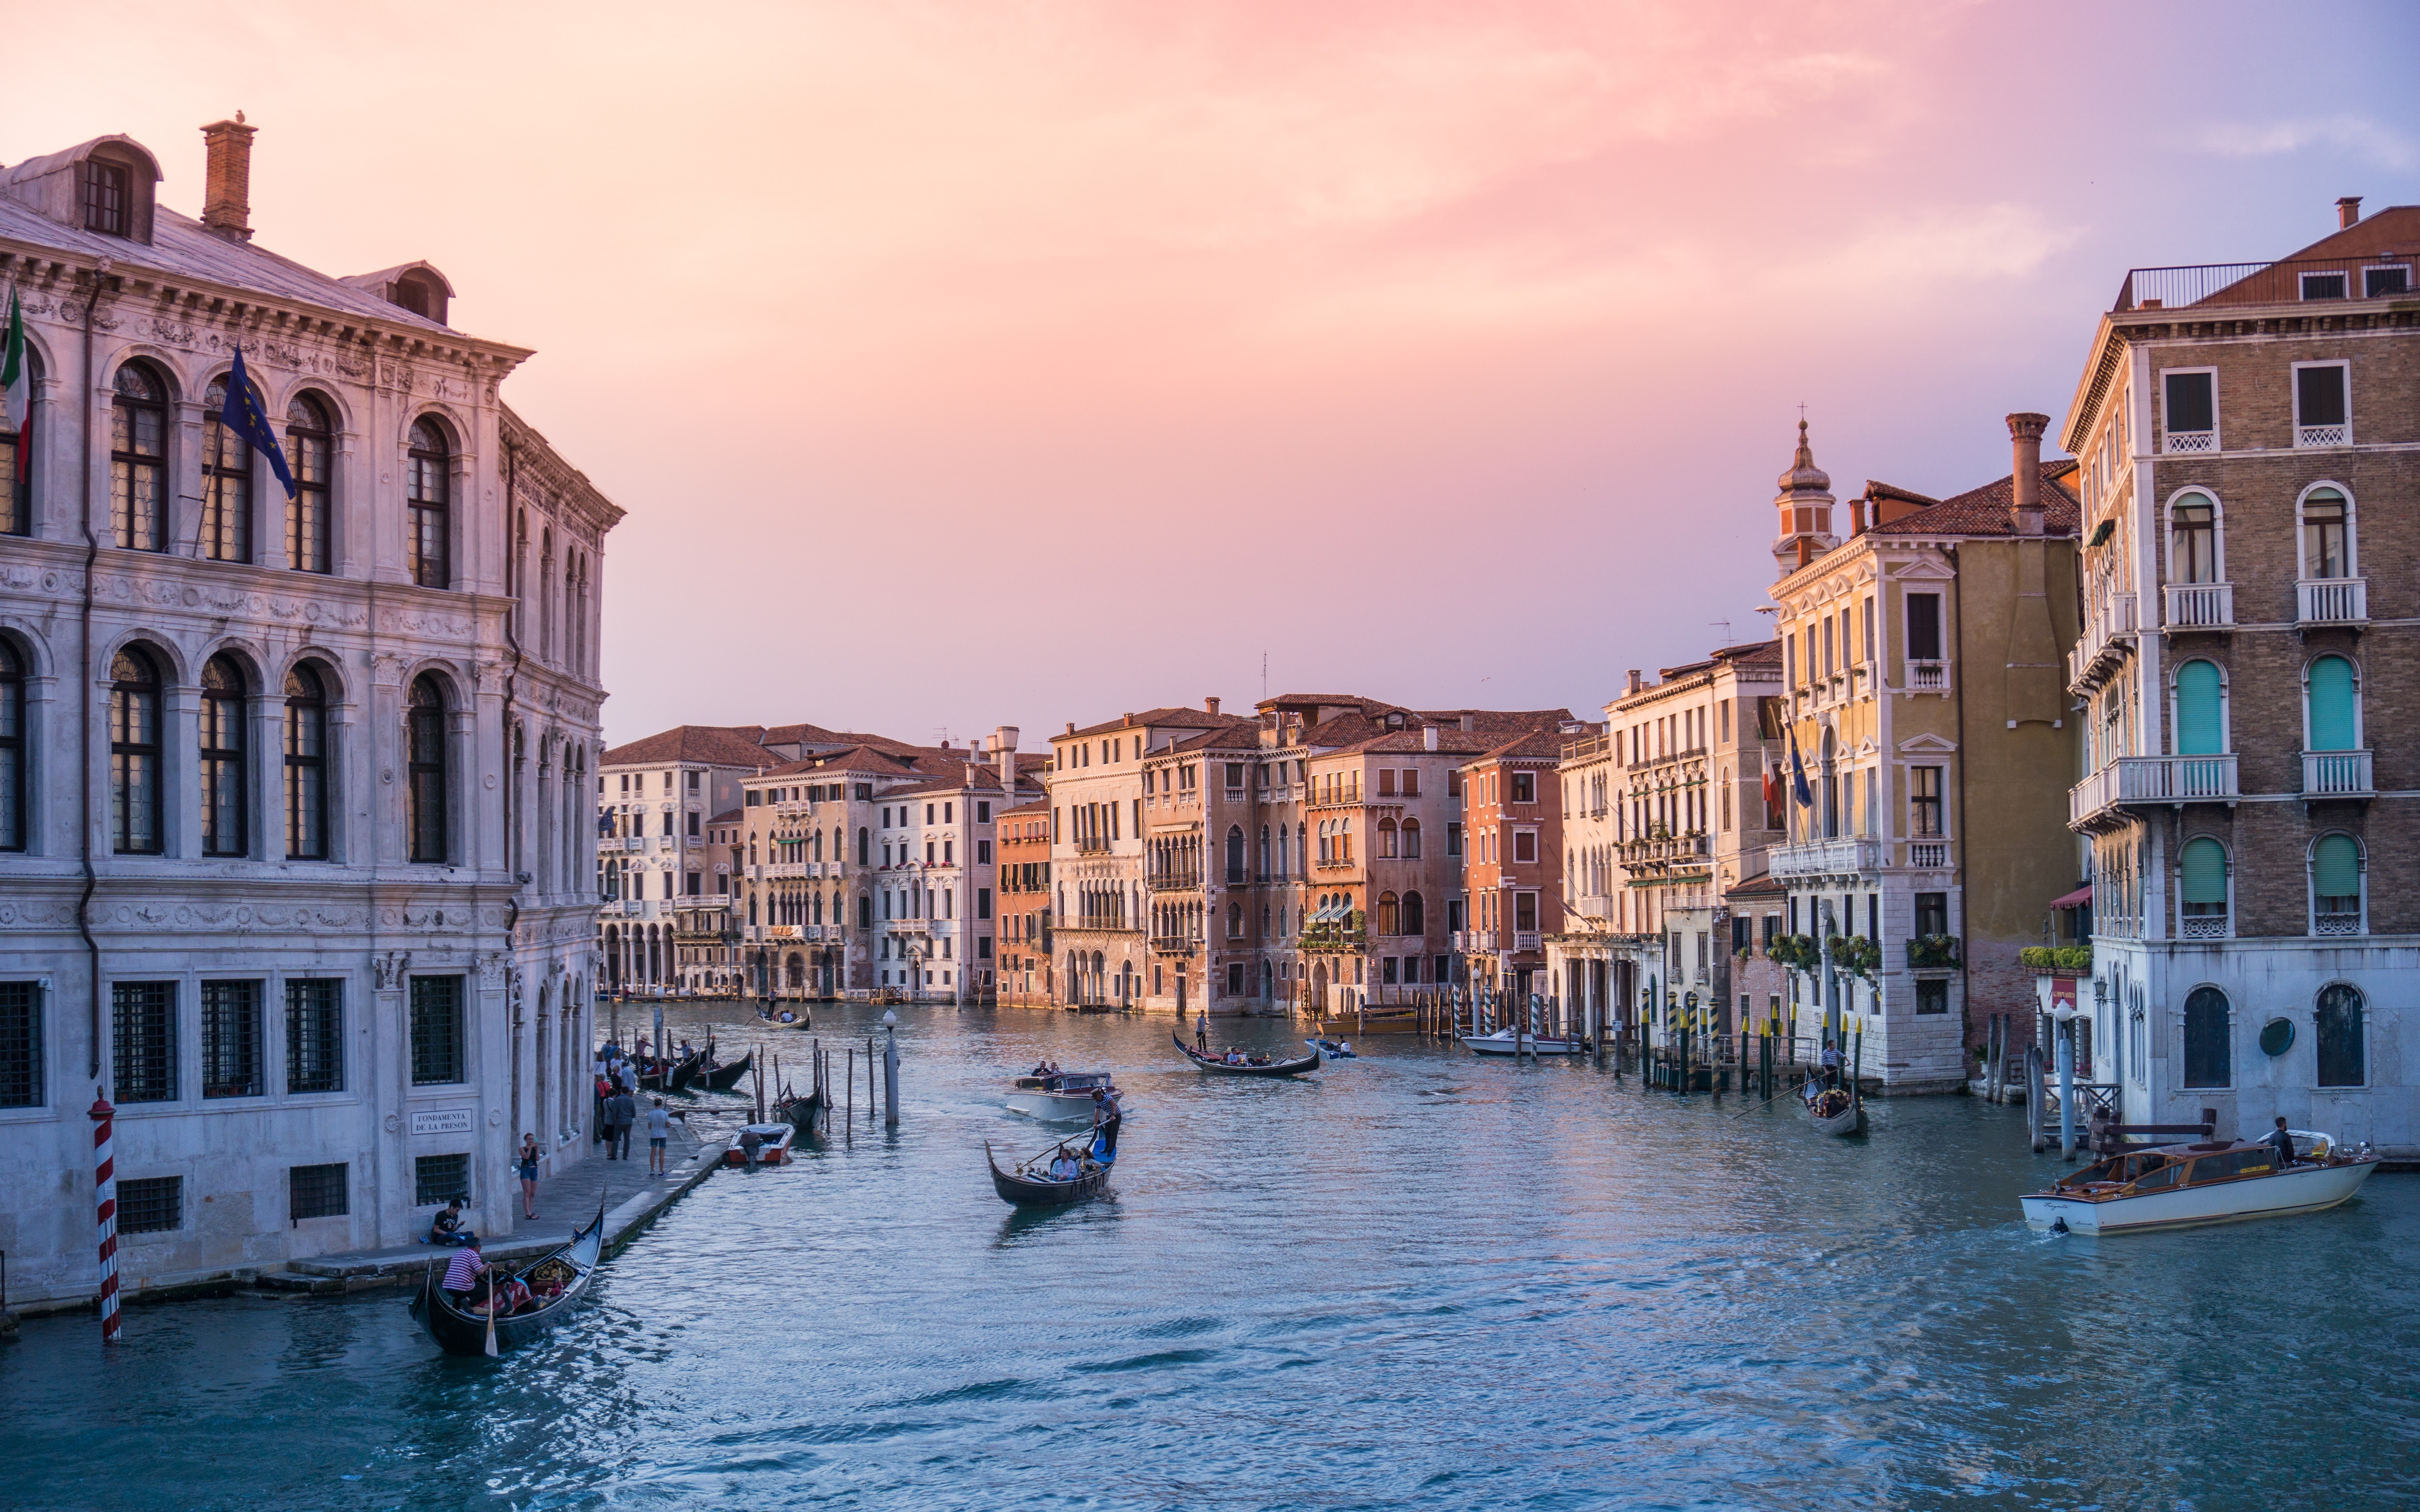 Venedik, İtalya'nın klasik destinasyonlarından biridir ve güzellik açısından neredeyse rakipsizdir.  İtalya'daki en iyi yerlere rehberimizi okuyun